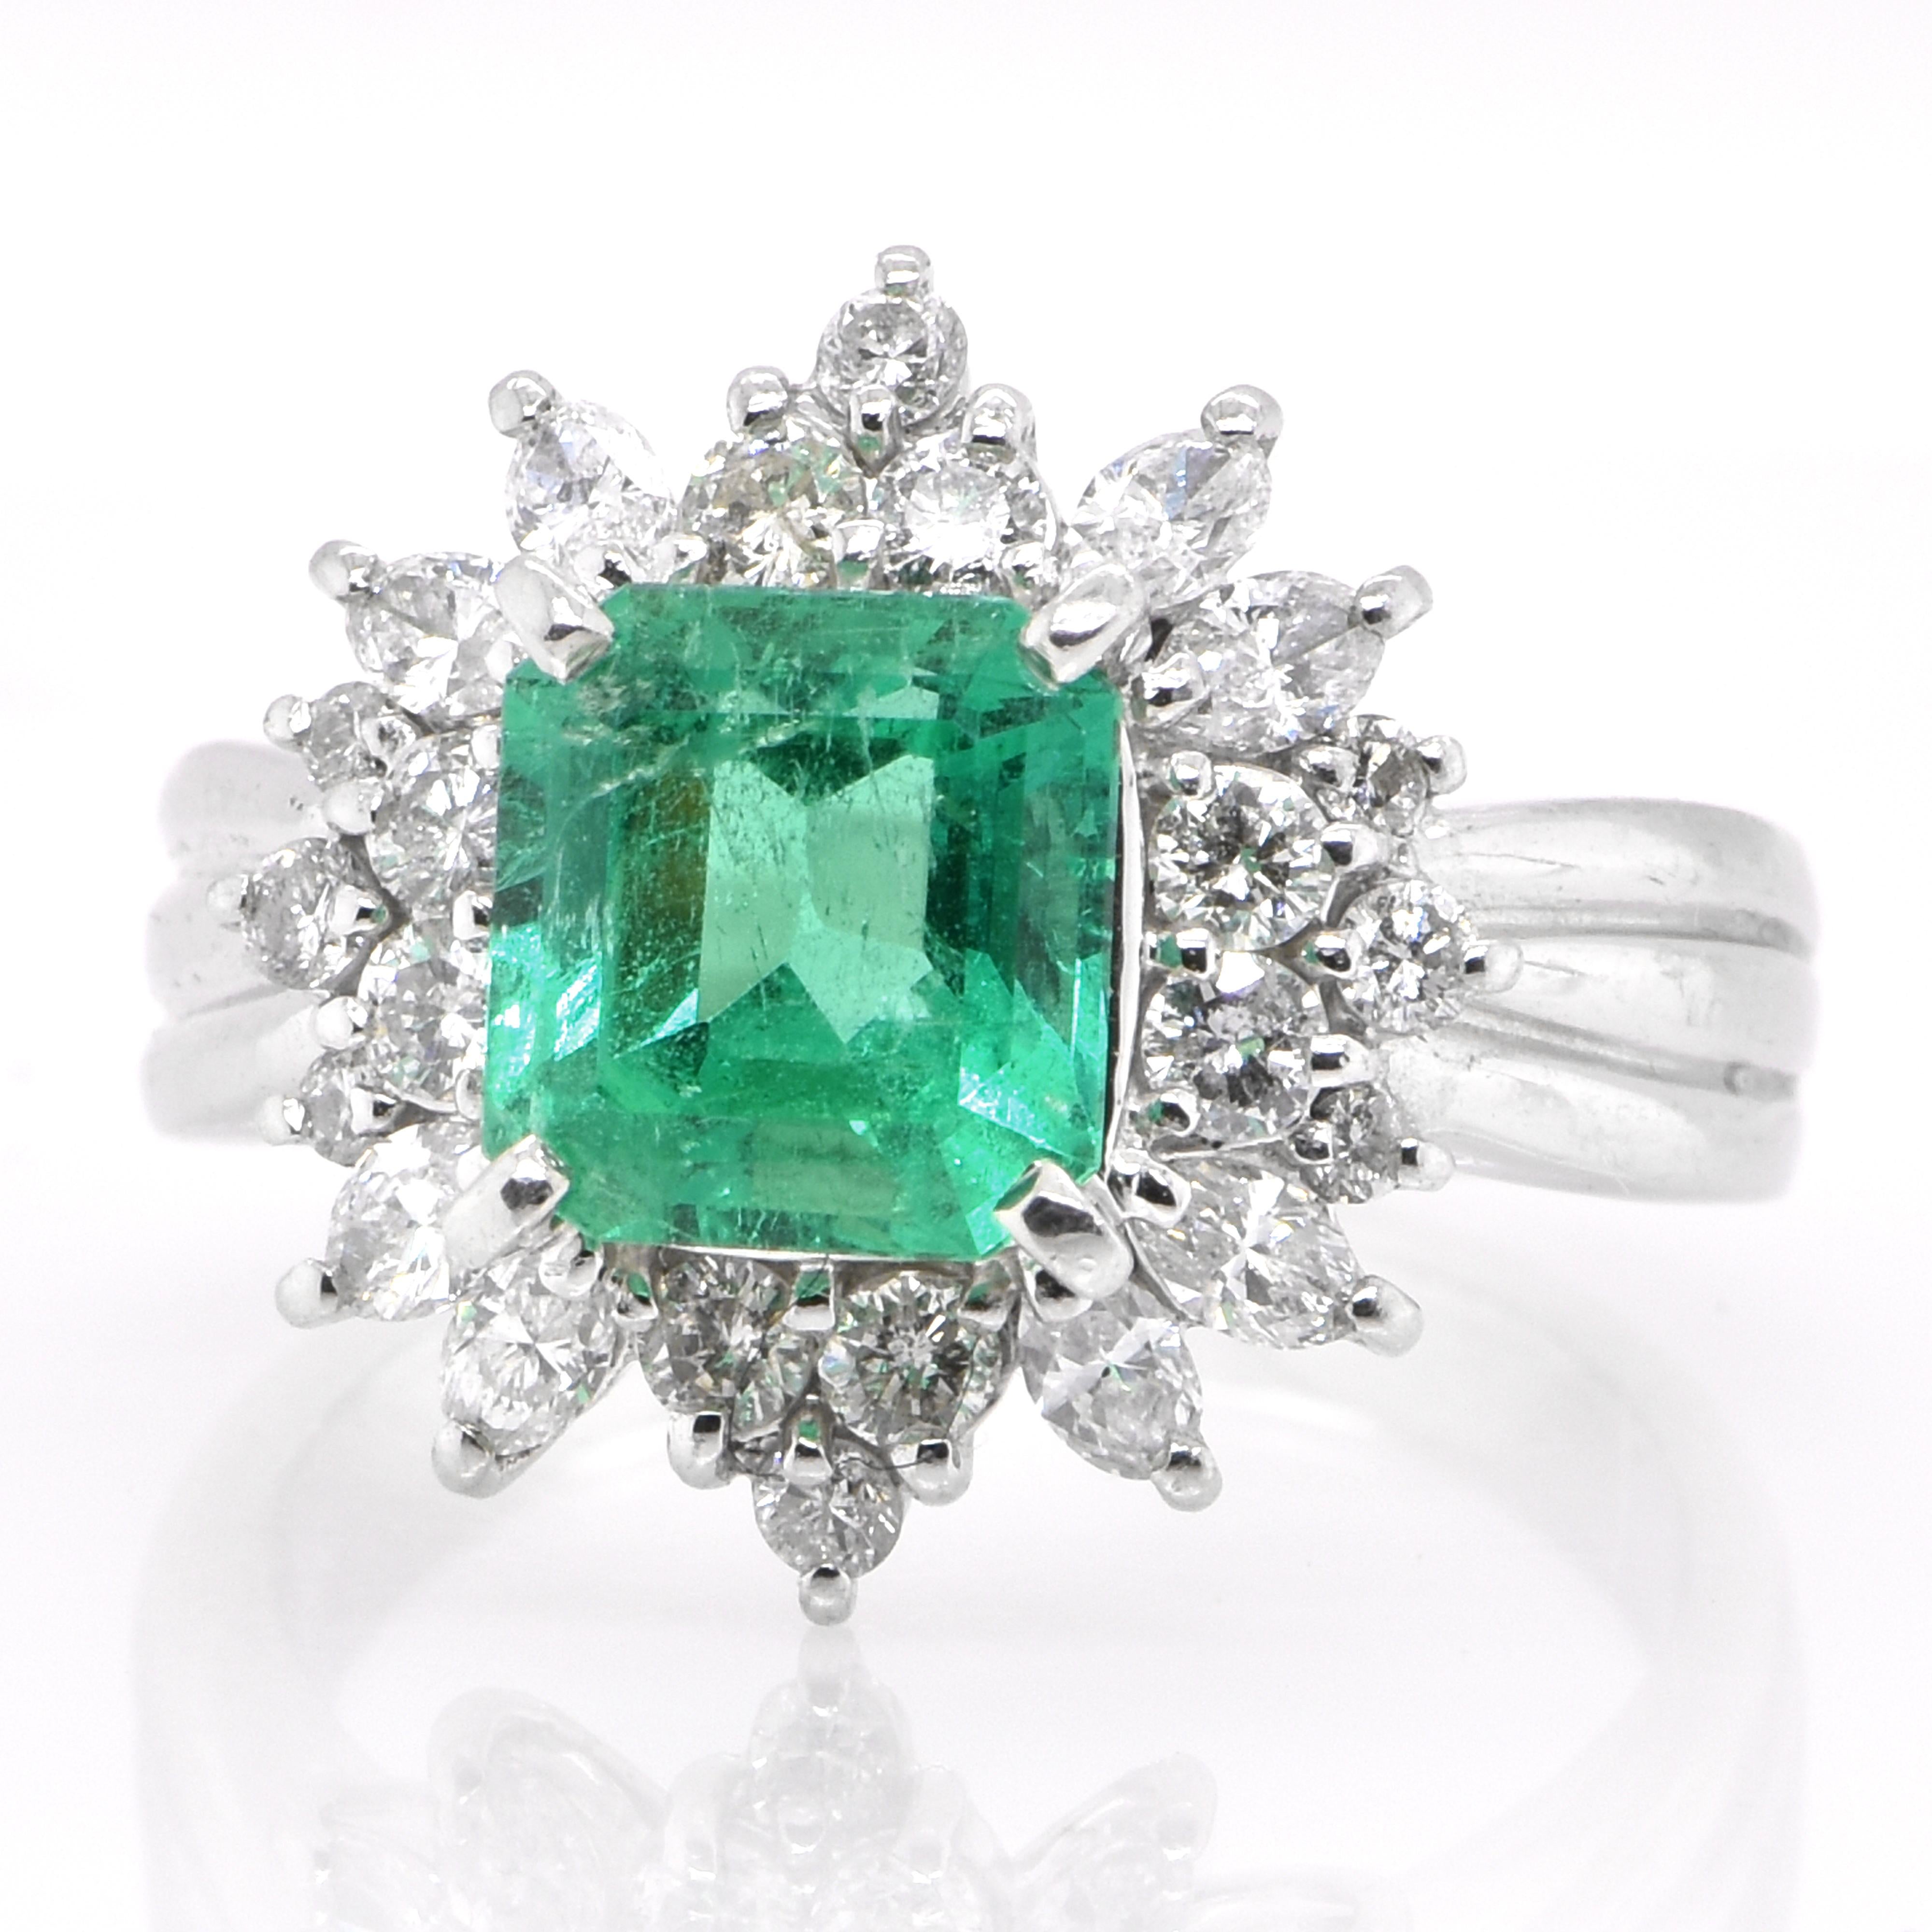 Ein atemberaubender Ring mit einem natürlichen kolumbianischen Smaragd von 1,90 Karat und Diamanten von 0,905 Karat, gefasst in Platin. Seit Tausenden von Jahren bewundern die Menschen das Grün des Smaragds. Smaragde werden seit jeher mit den